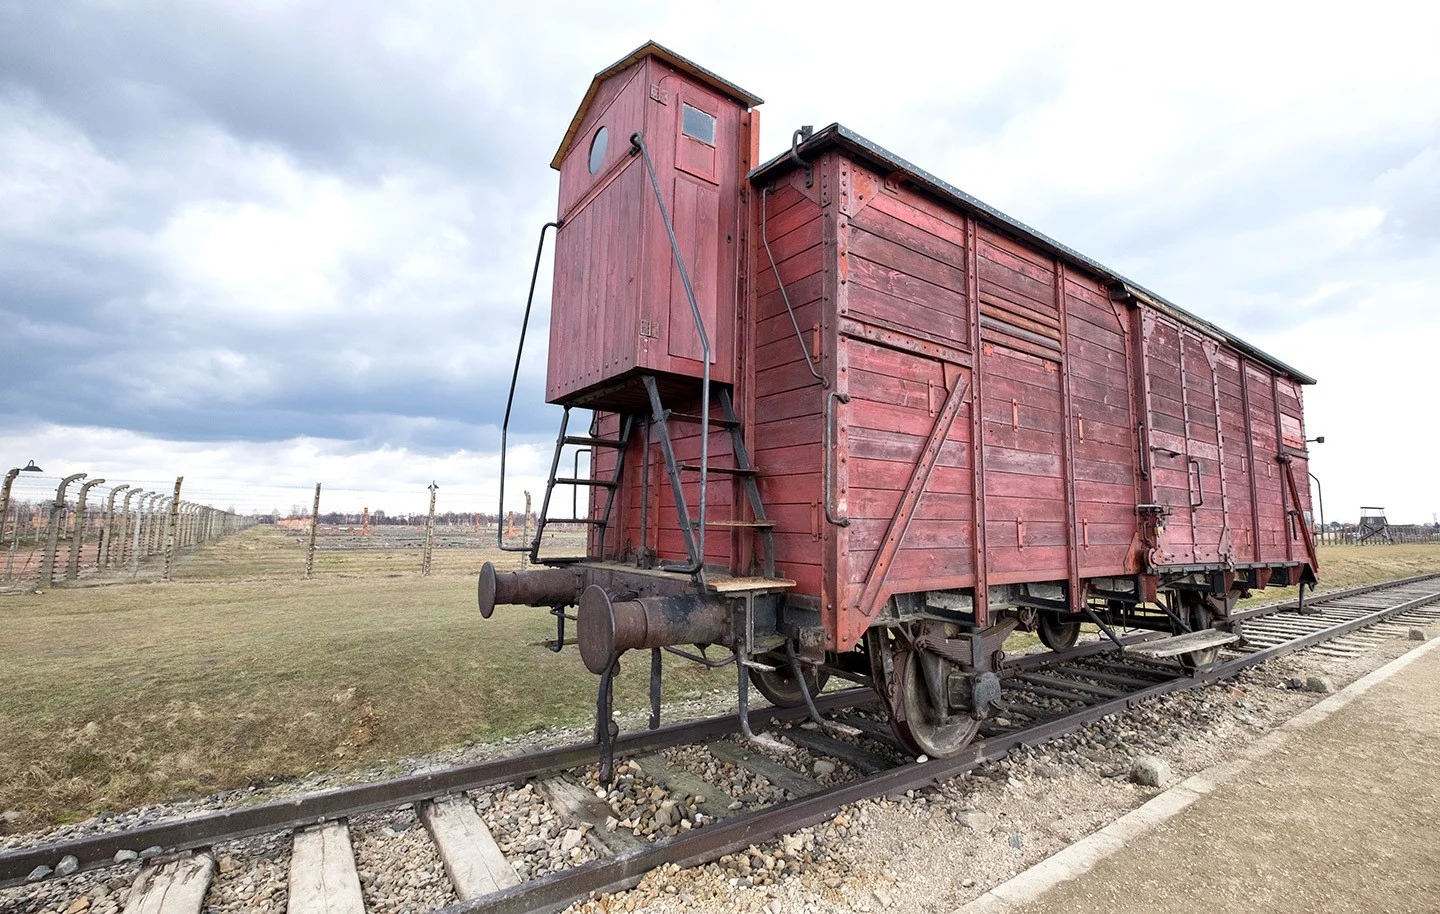 Railway line at Auschwitz-Birkenau, Poland